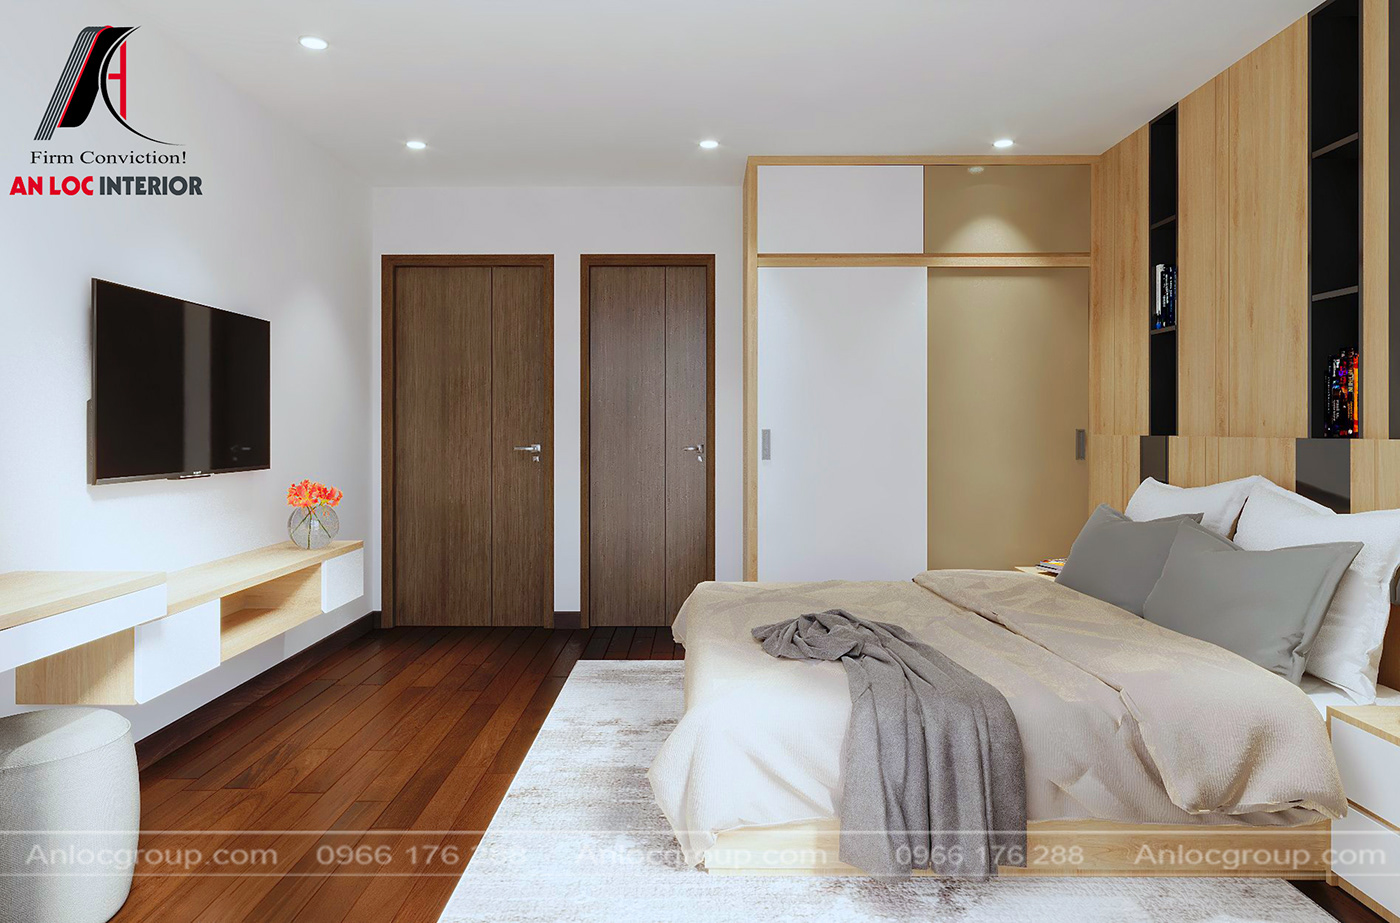 anlocgroup nội thất an lộc nội thất chung cư thiết kế căn hộ thiết ke chung cư thiết kế chung cư 80m2 Thiết kế nội thất